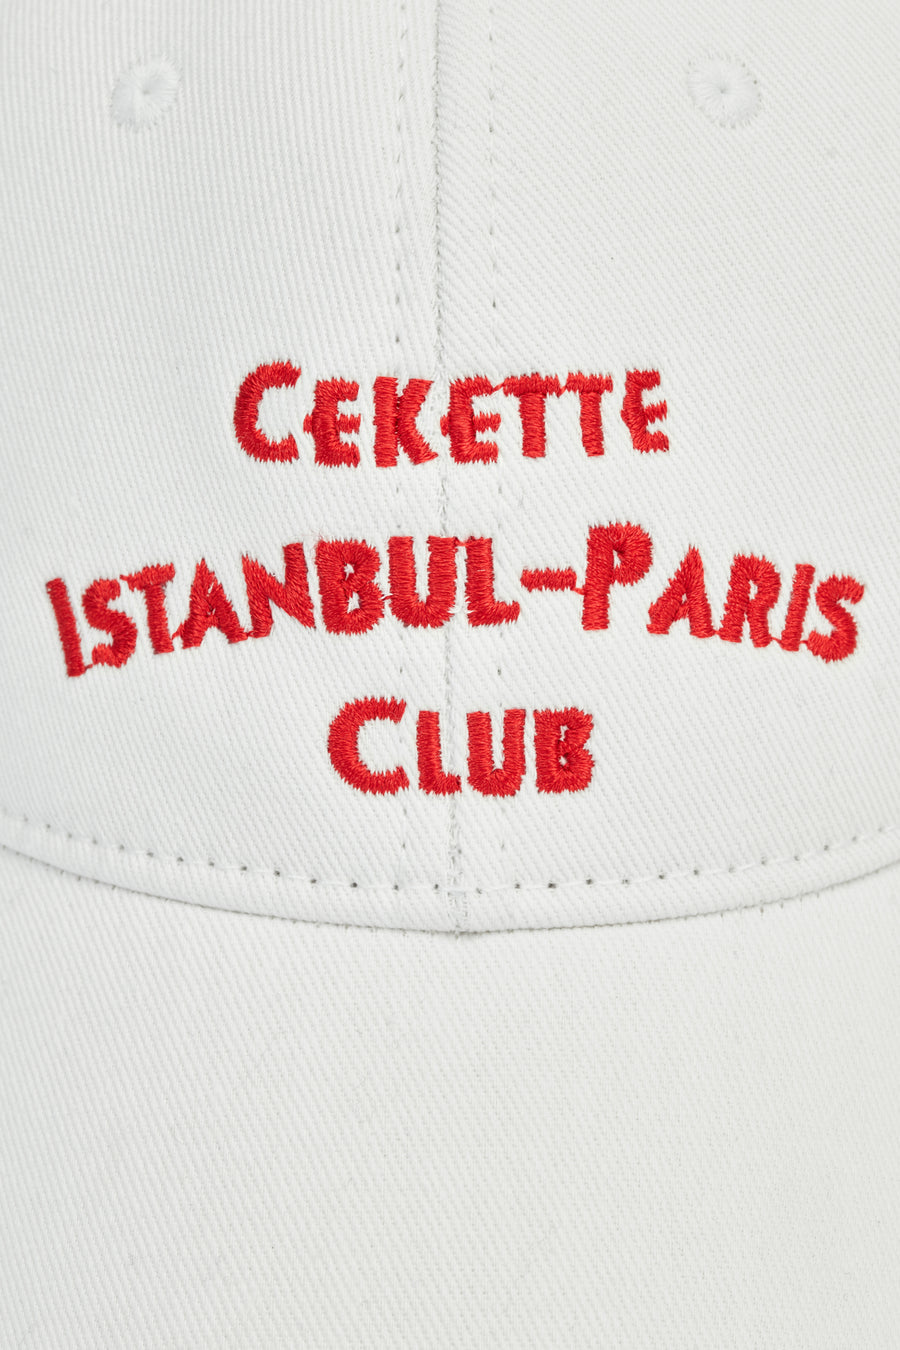 ISTANBUL-PARIS CLUB CAP